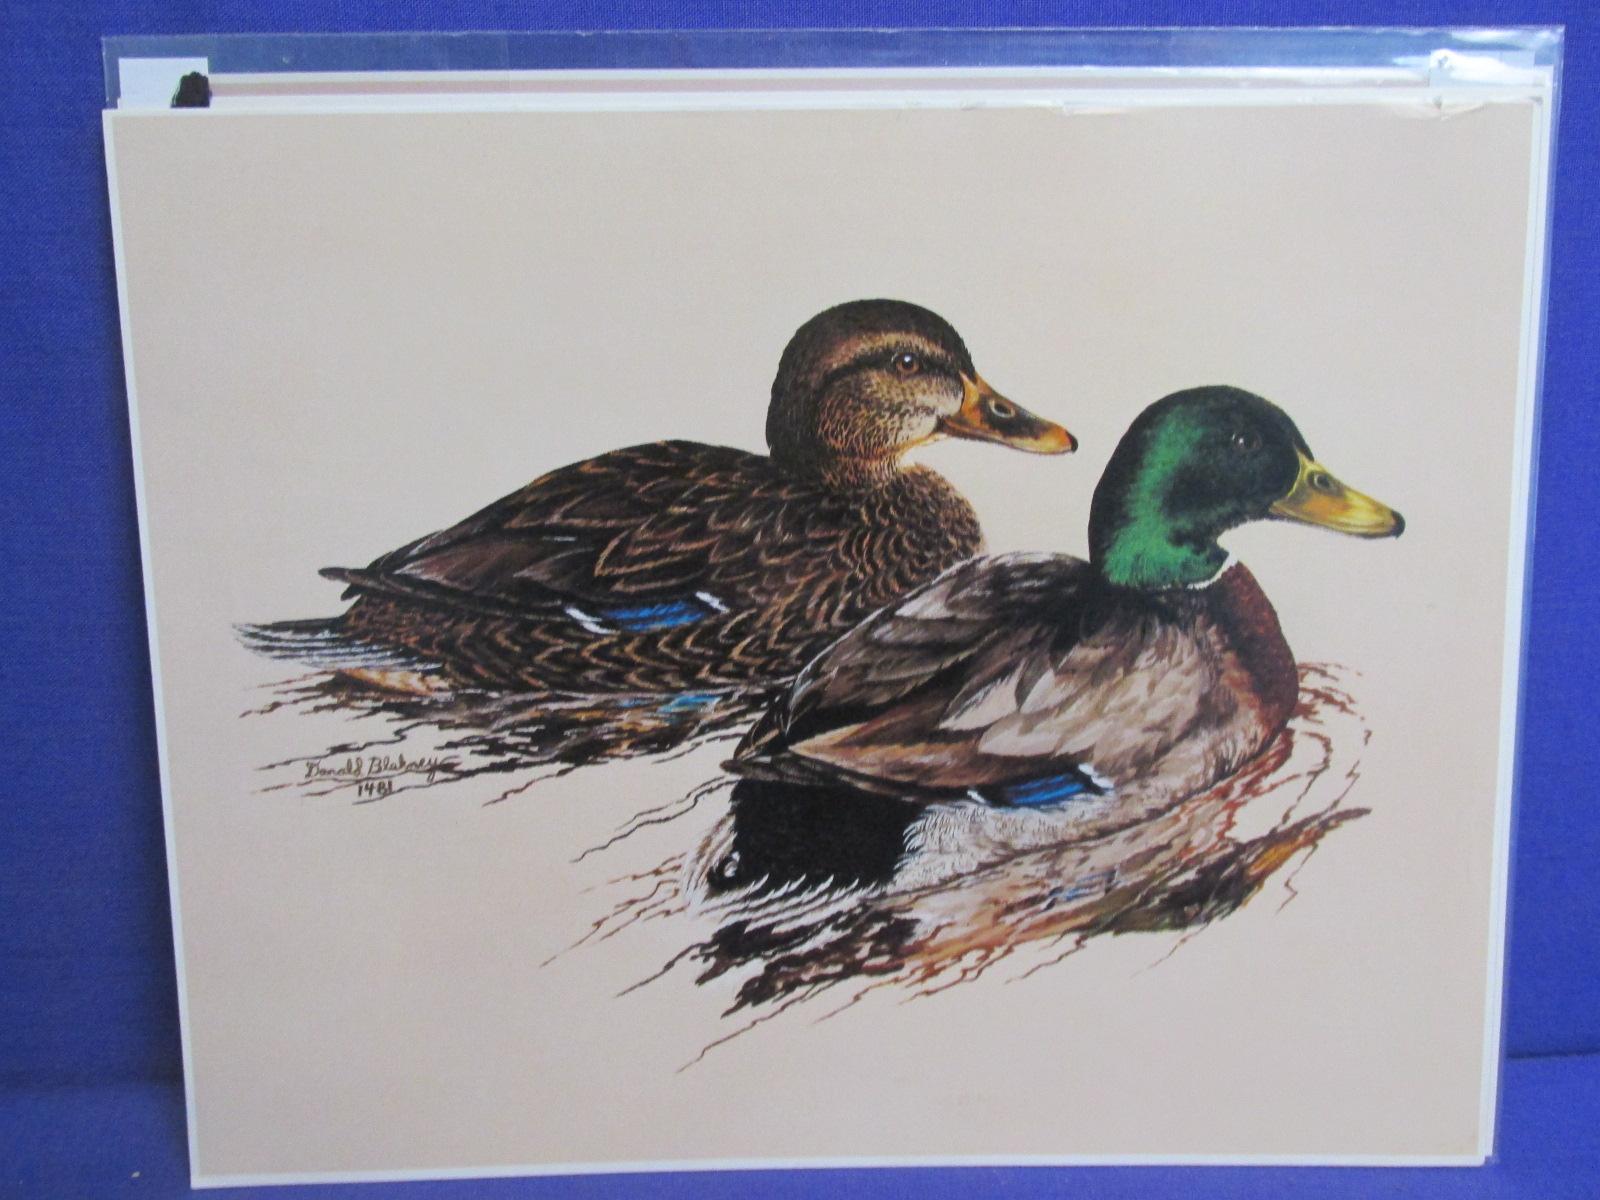 14 Wildlife Prints – 5 Les Kouba 7 1/2” x 10” , 5 Donald Blakney each 9x 12” & 4 8x10